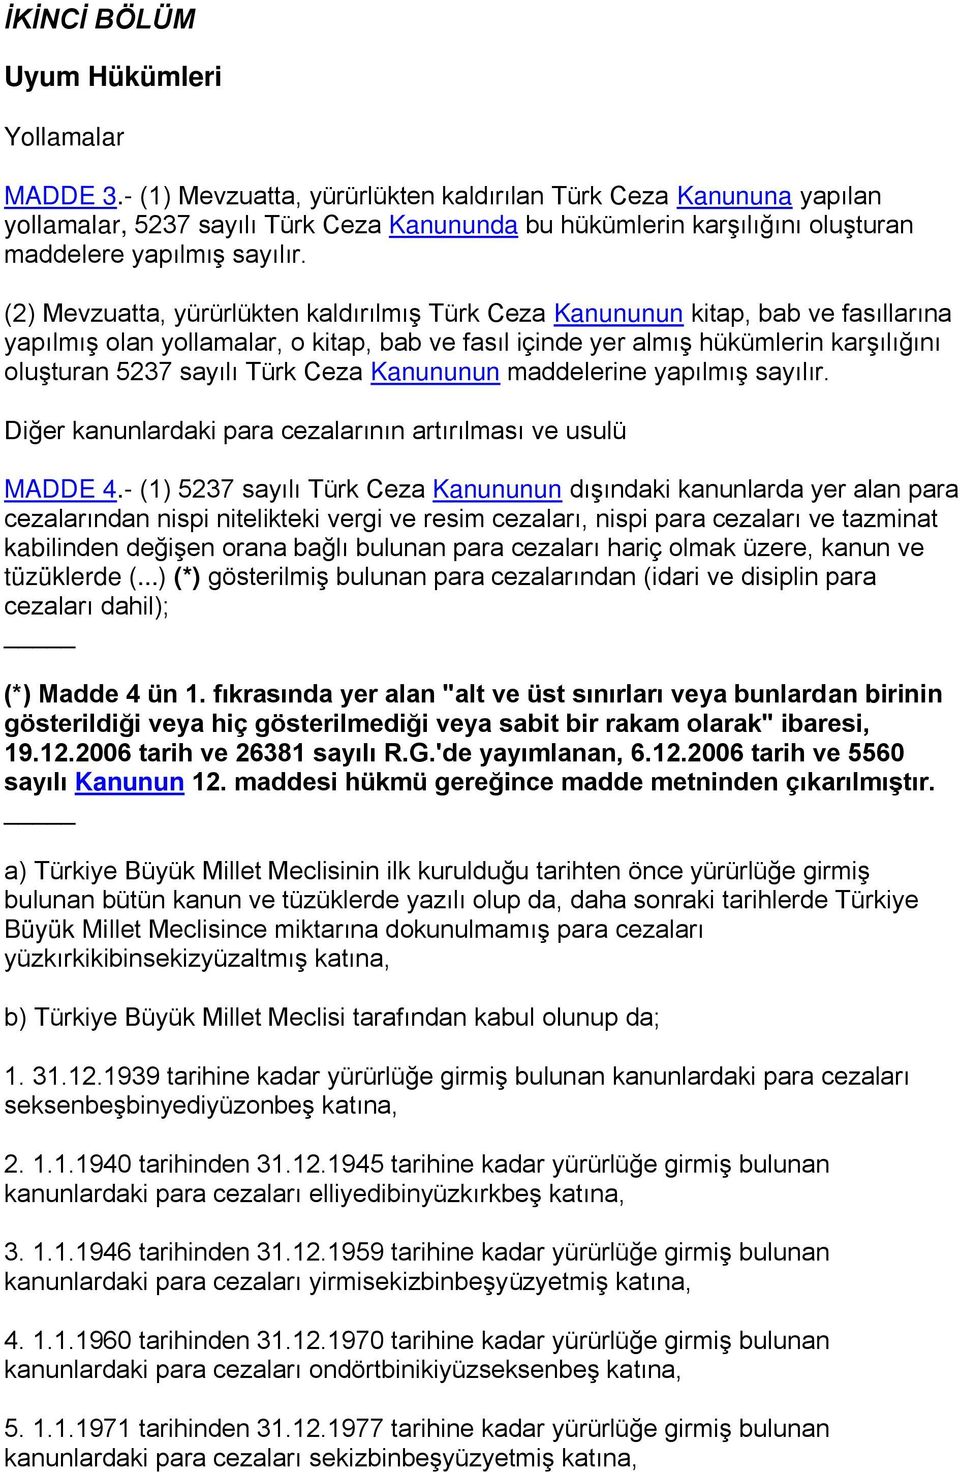 (2) Mevzuatta, yürürlükten kaldırılmış Türk Ceza Kanununun kitap, bab ve fasıllarına yapılmış olan yollamalar, o kitap, bab ve fasıl içinde yer almış hükümlerin karşılığını oluşturan 5237 sayılı Türk